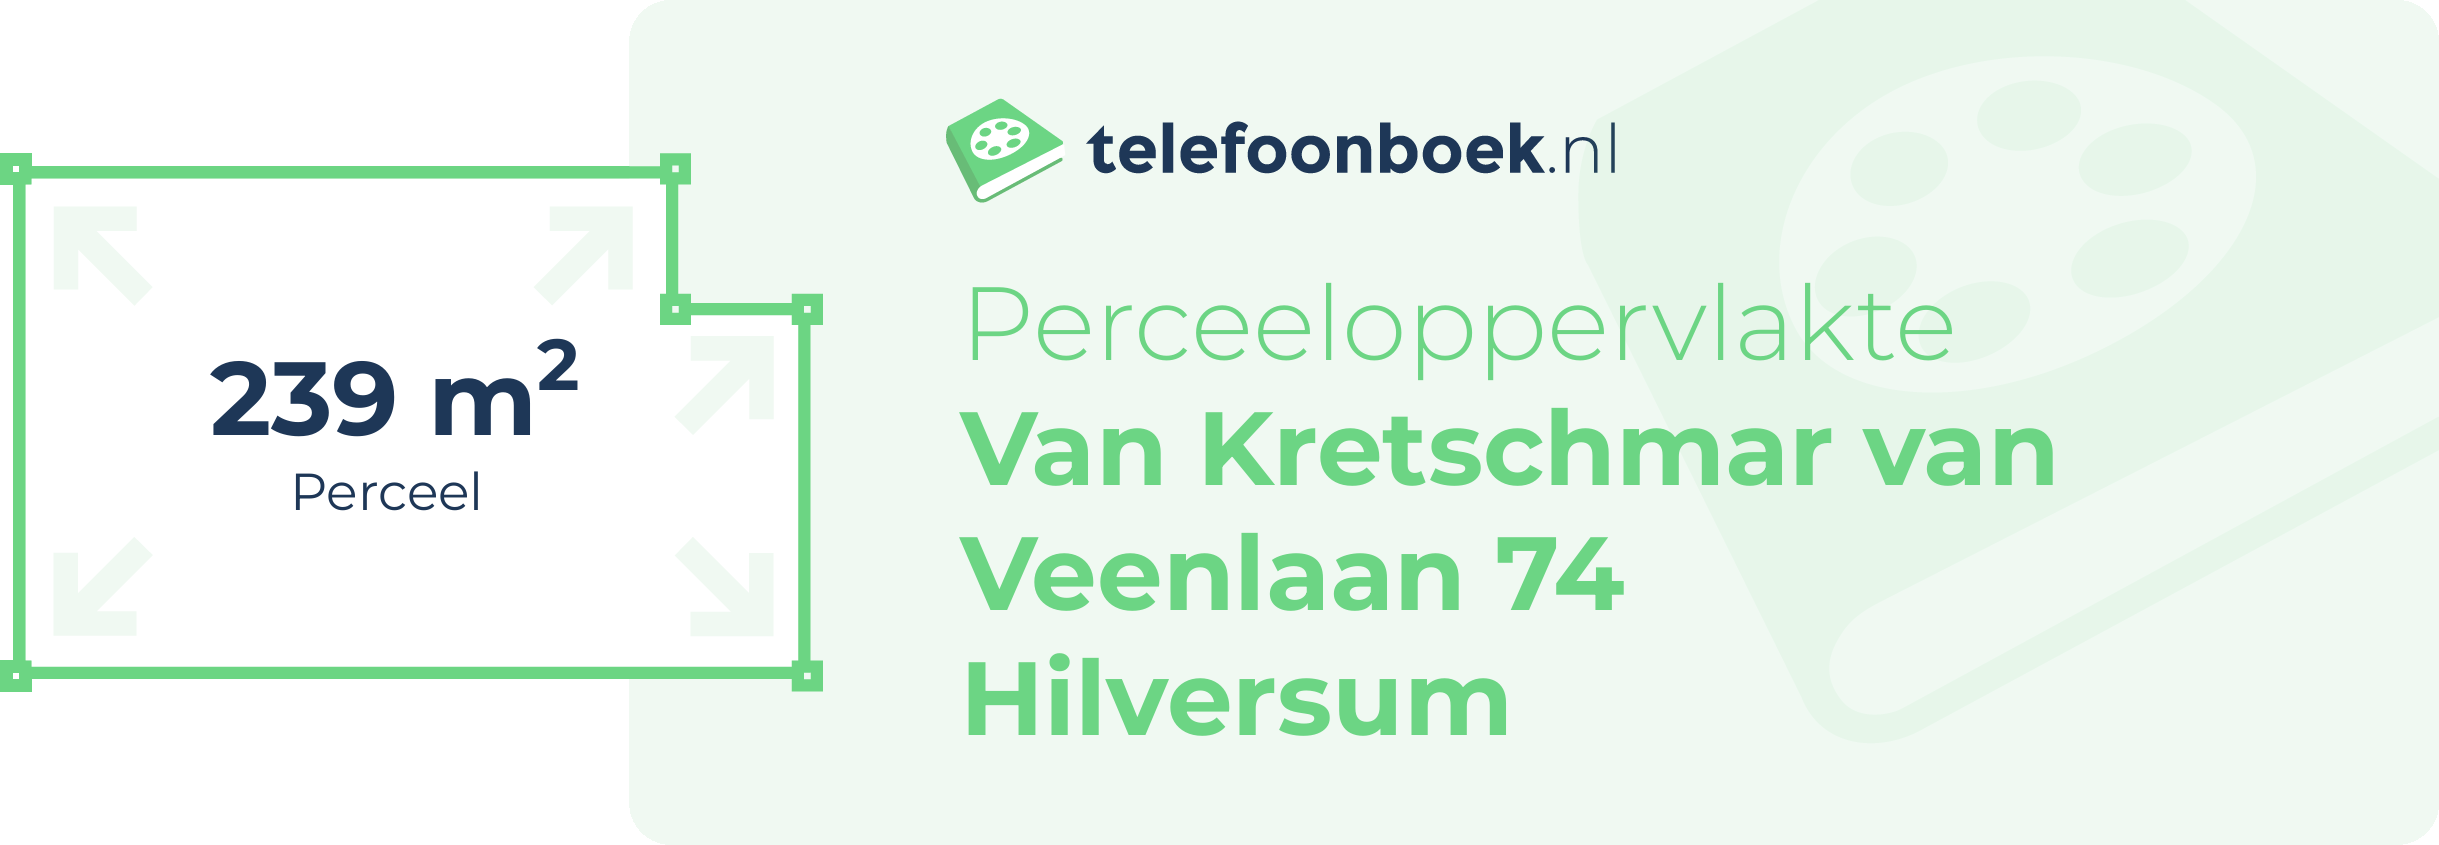 Perceeloppervlakte Van Kretschmar Van Veenlaan 74 Hilversum